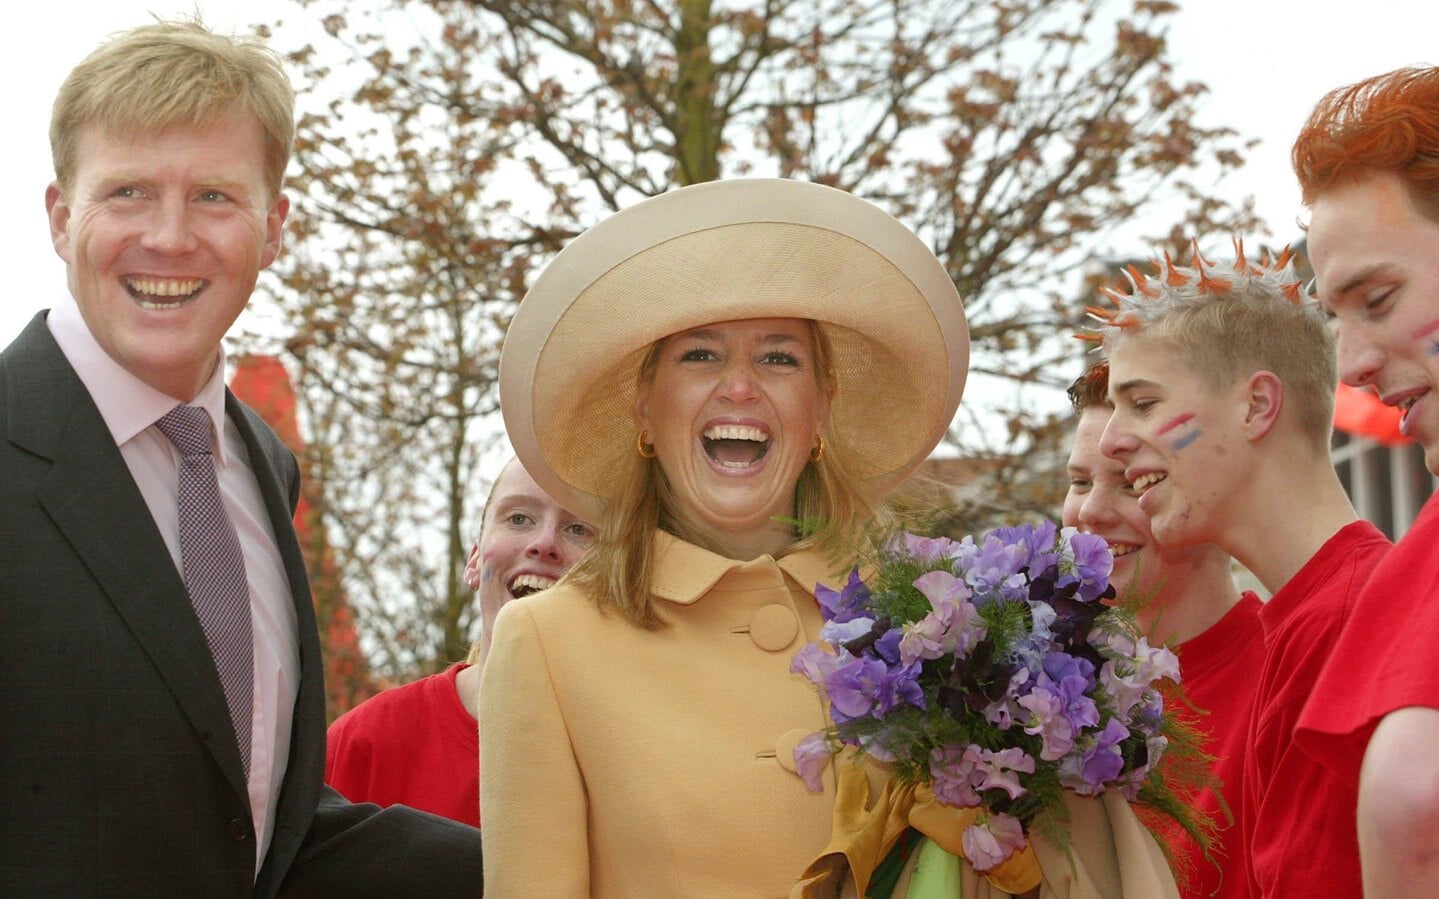 Drenthe had op 30 april 2002 een primeur: het was Máxima’s eerste Koninginnedag.